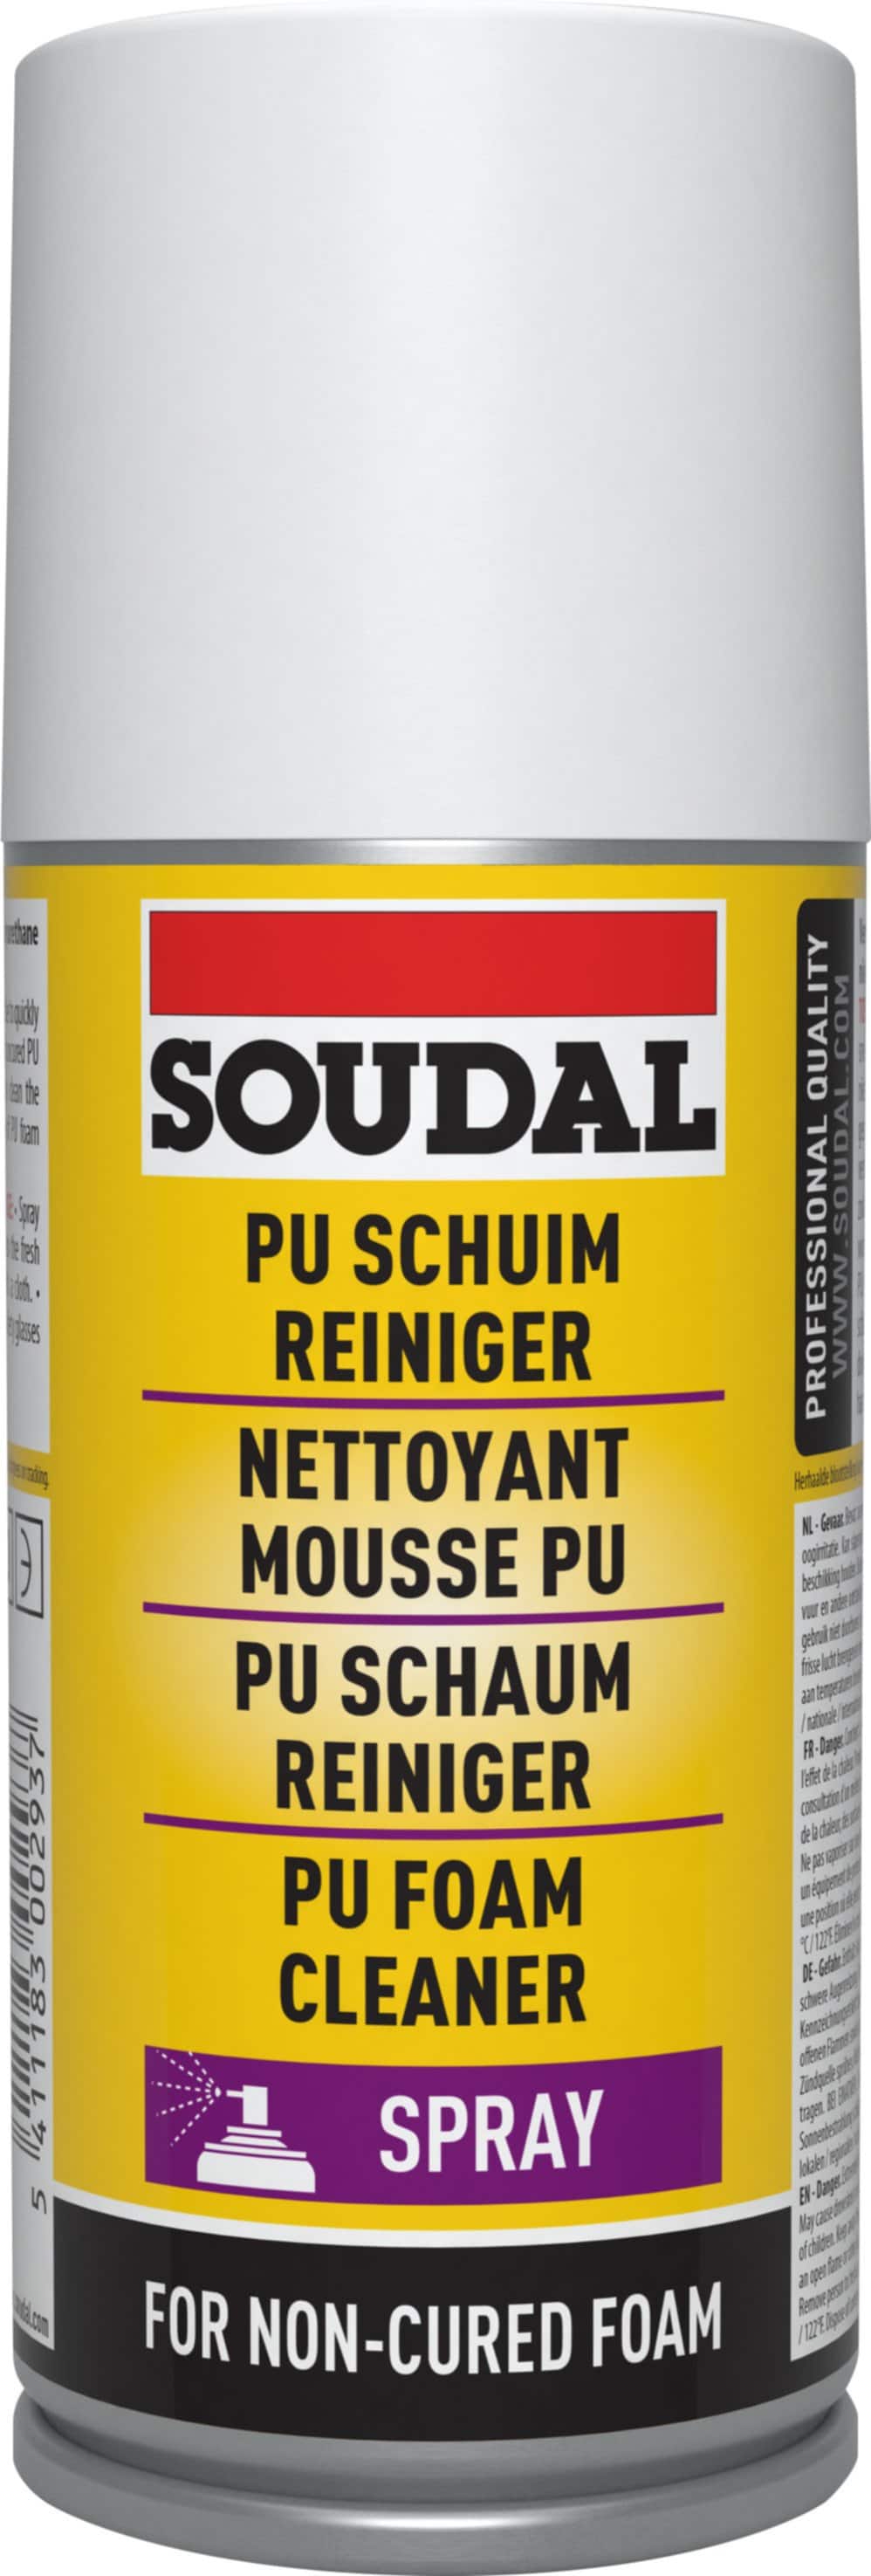 Mousse expansive 300 ml + 35% GRATUIT - SOUDAL - Mr.Bricolage